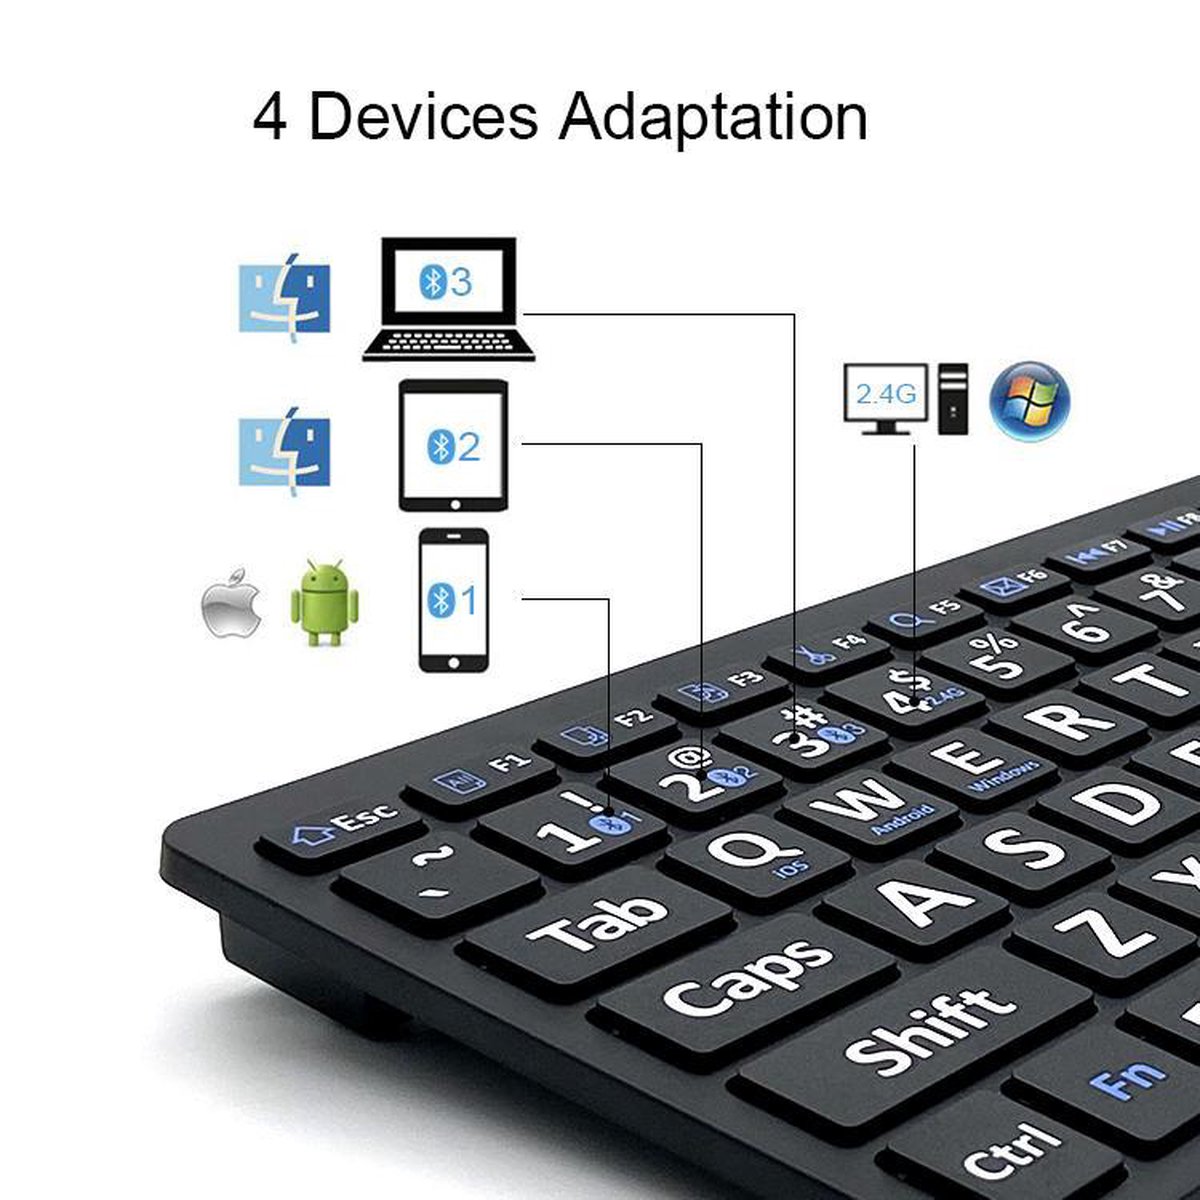 Mini clavier Bluetooth grands caractères pour malvoyant ou senior